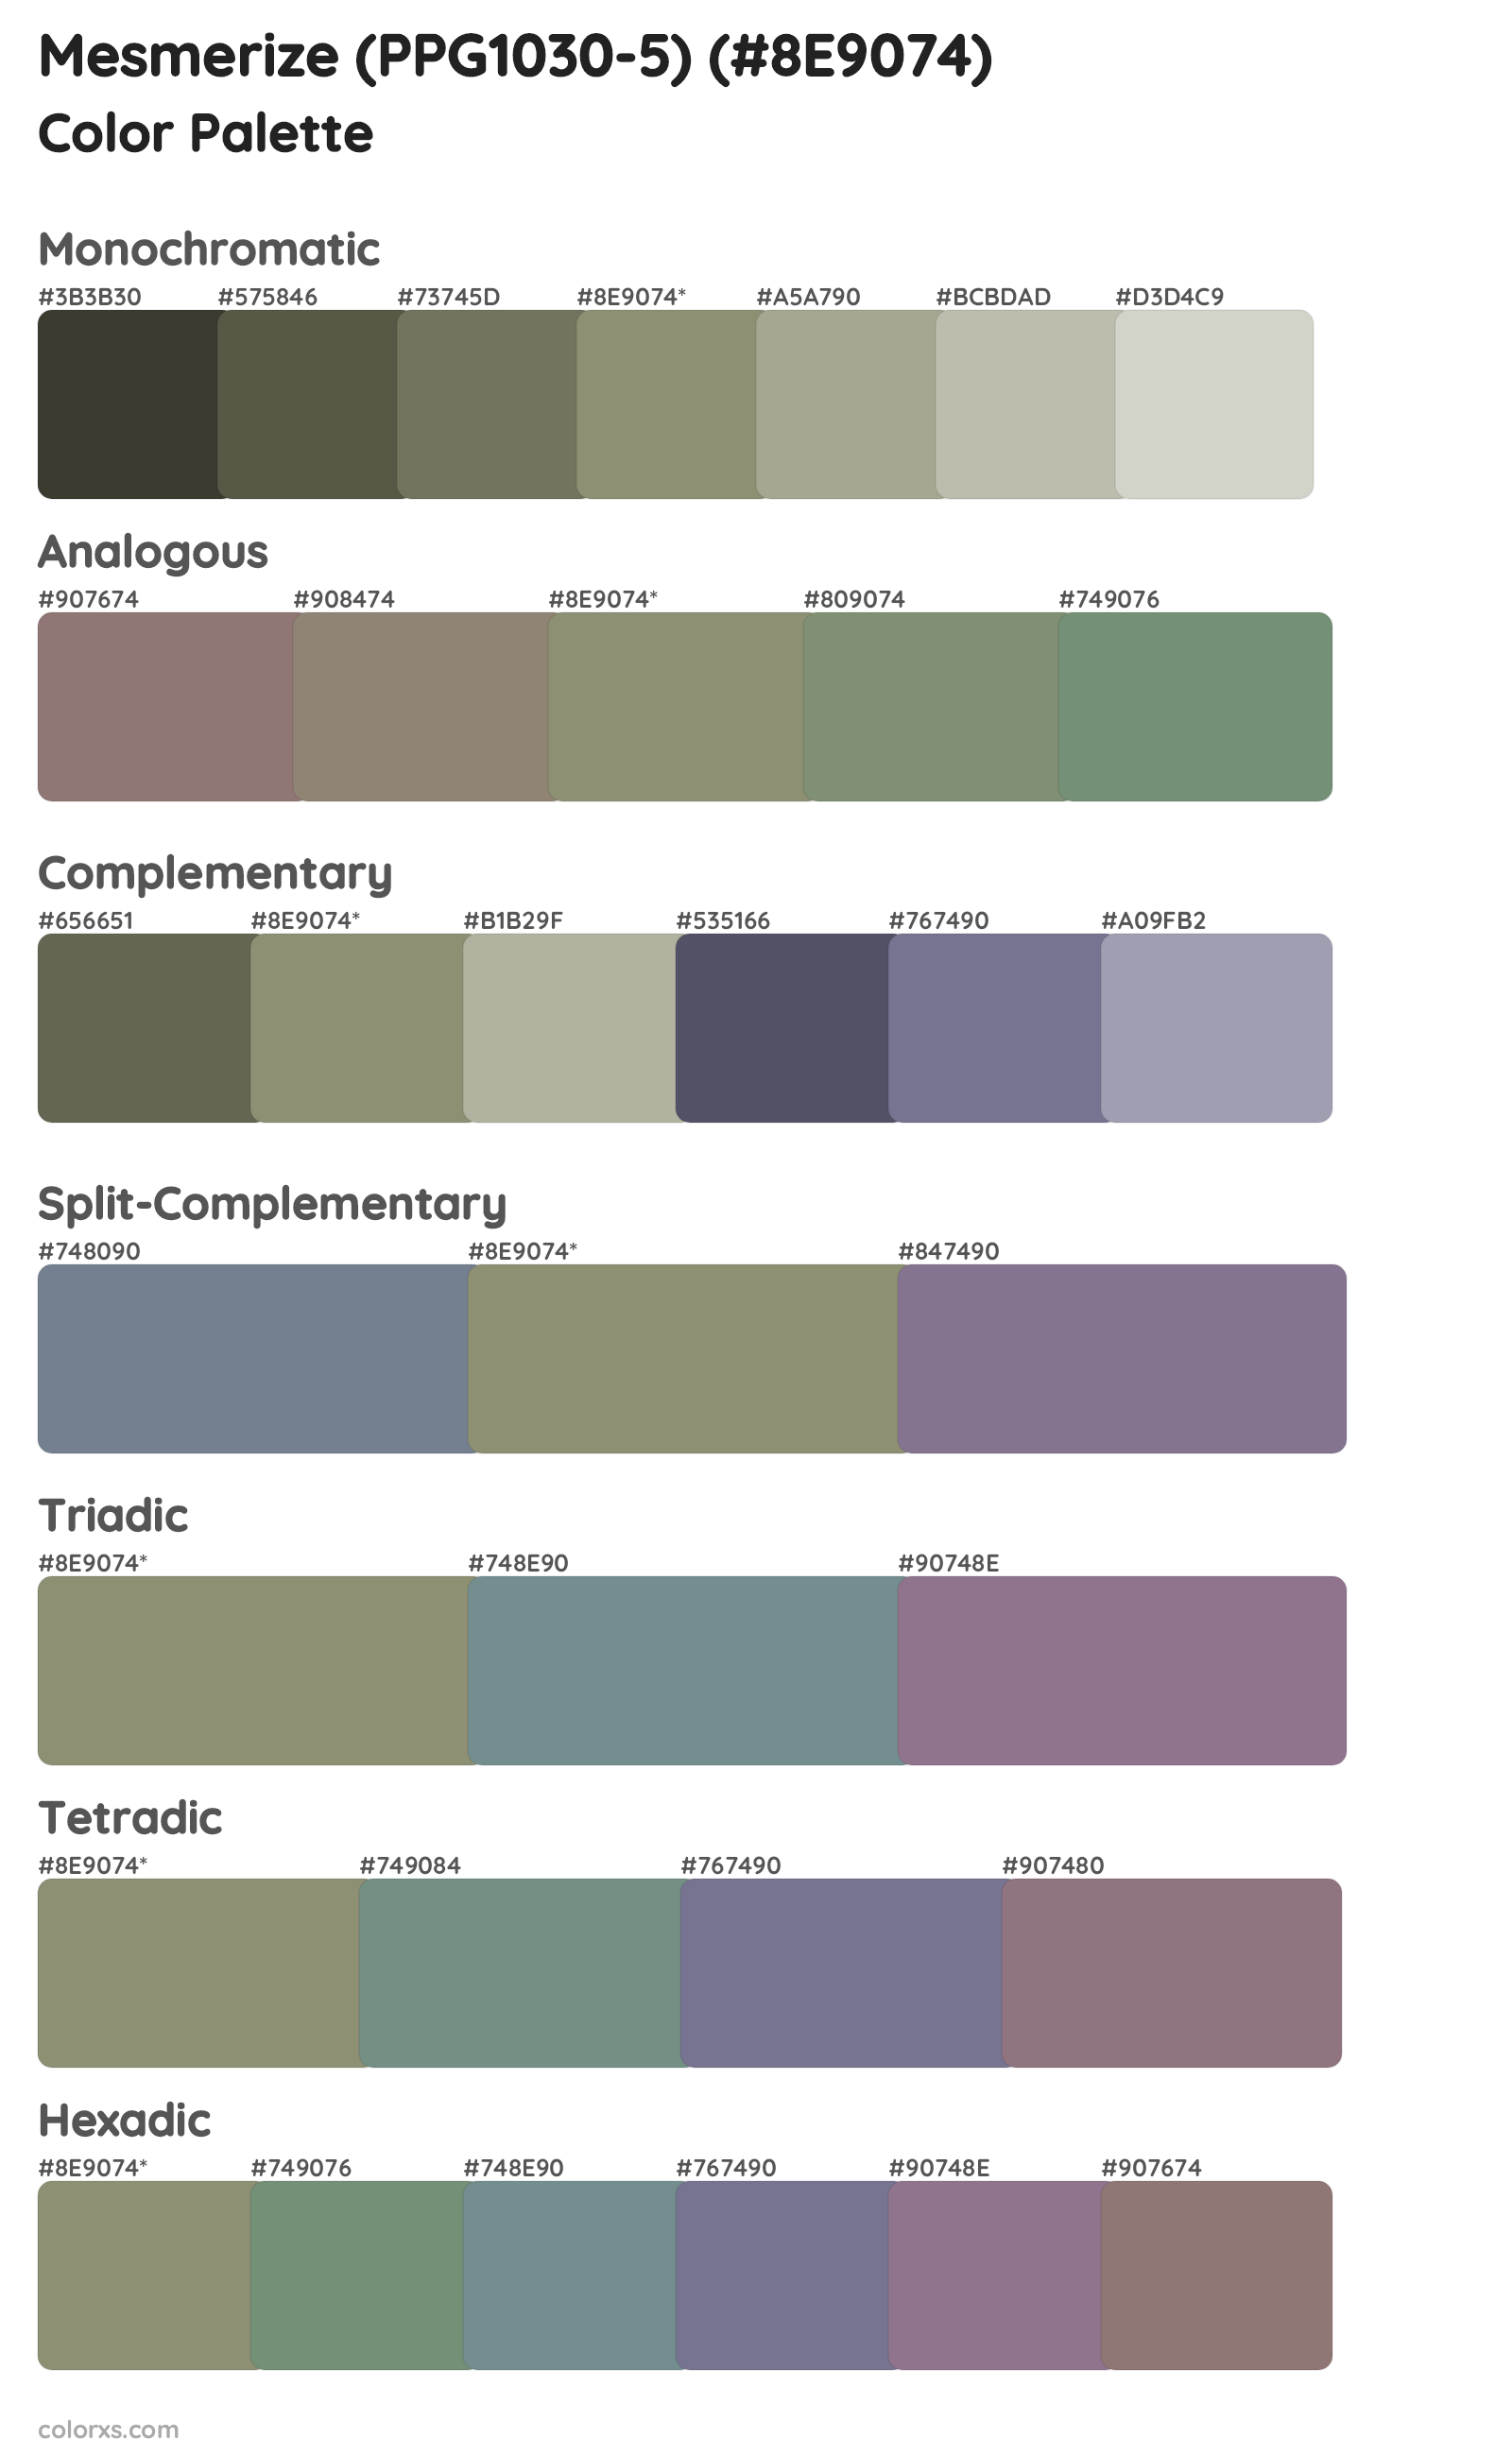 Mesmerize (PPG1030-5) Color Scheme Palettes